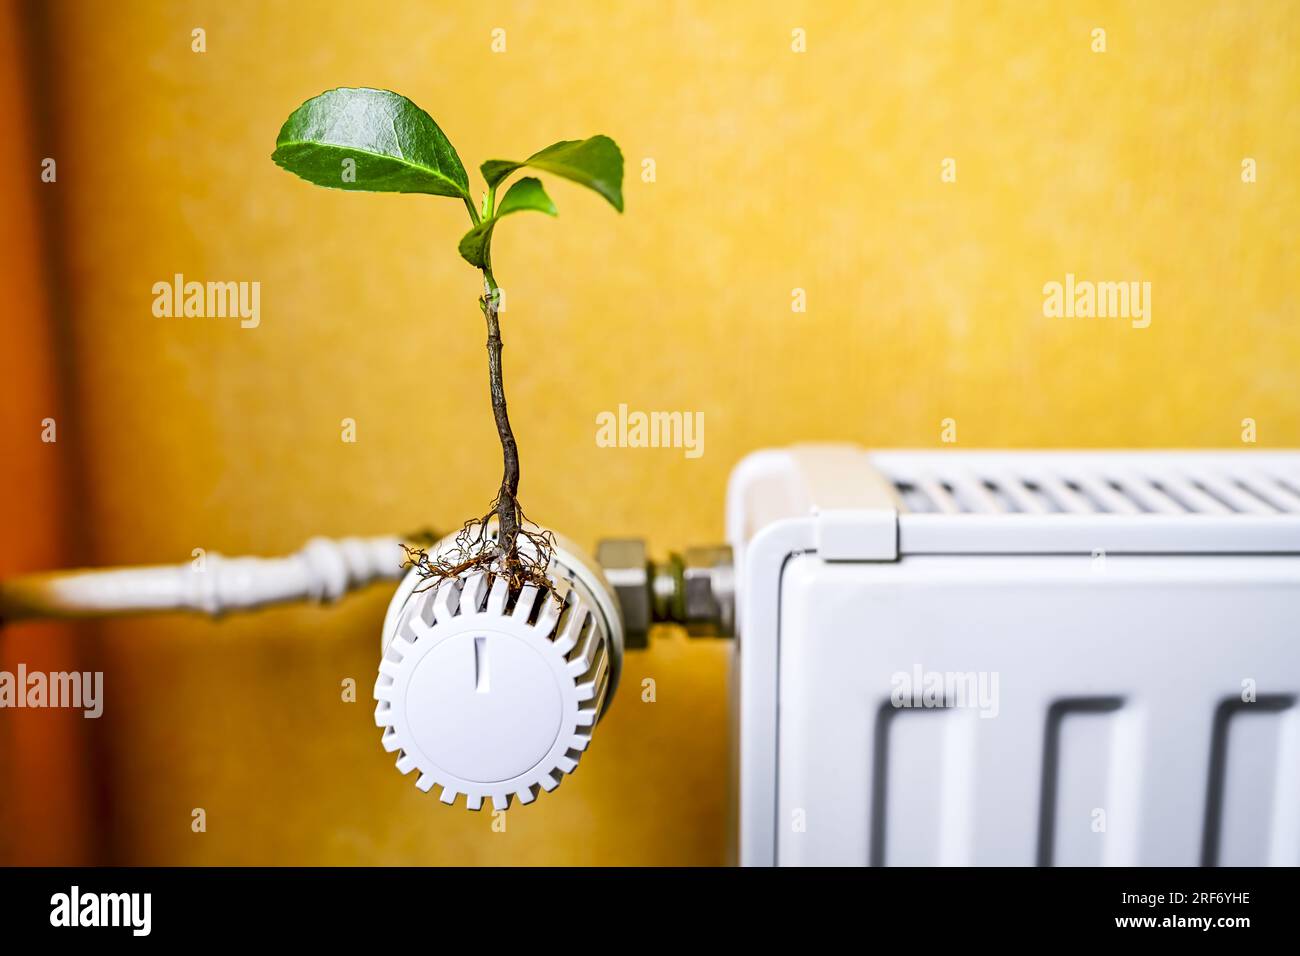 Pflanze wächst aus einem Heizungsthermostat, Symbolfoto für nachhaltiges Heizen und Klimaschutz Foto Stock